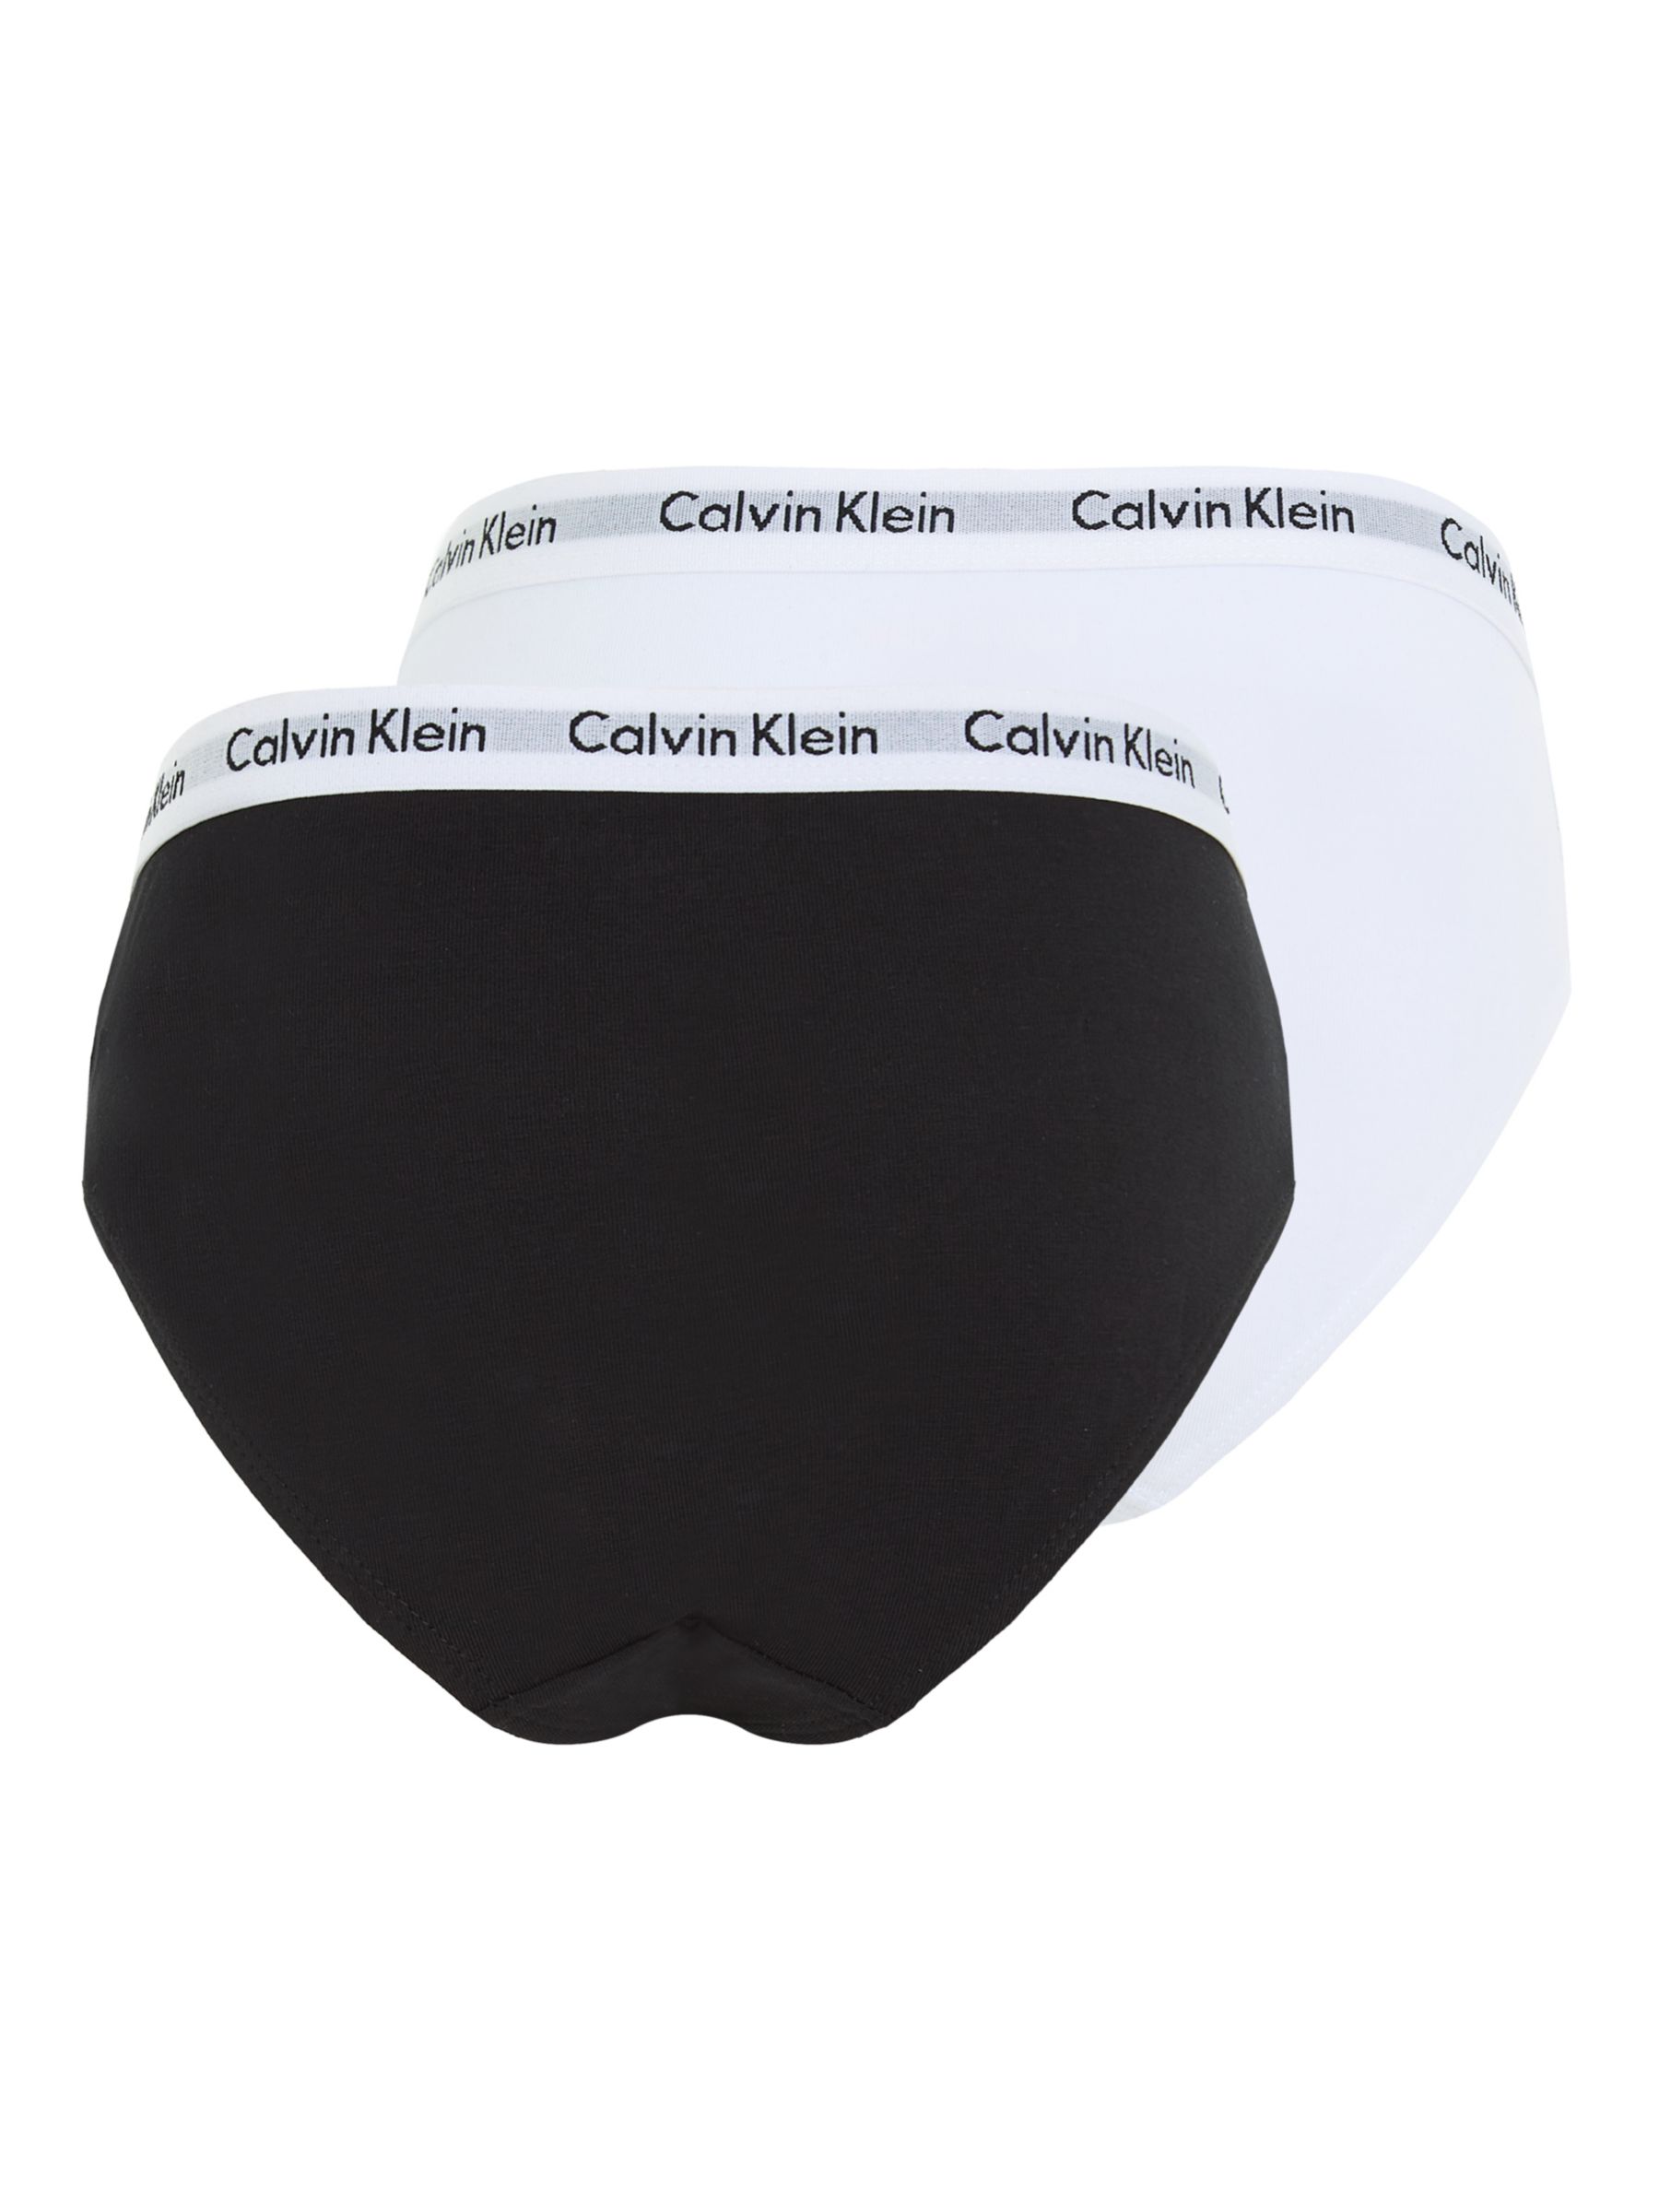 Calvin Klein Underwear MODERN 2 PACK - Briefs - black/white/black -  Zalando.de